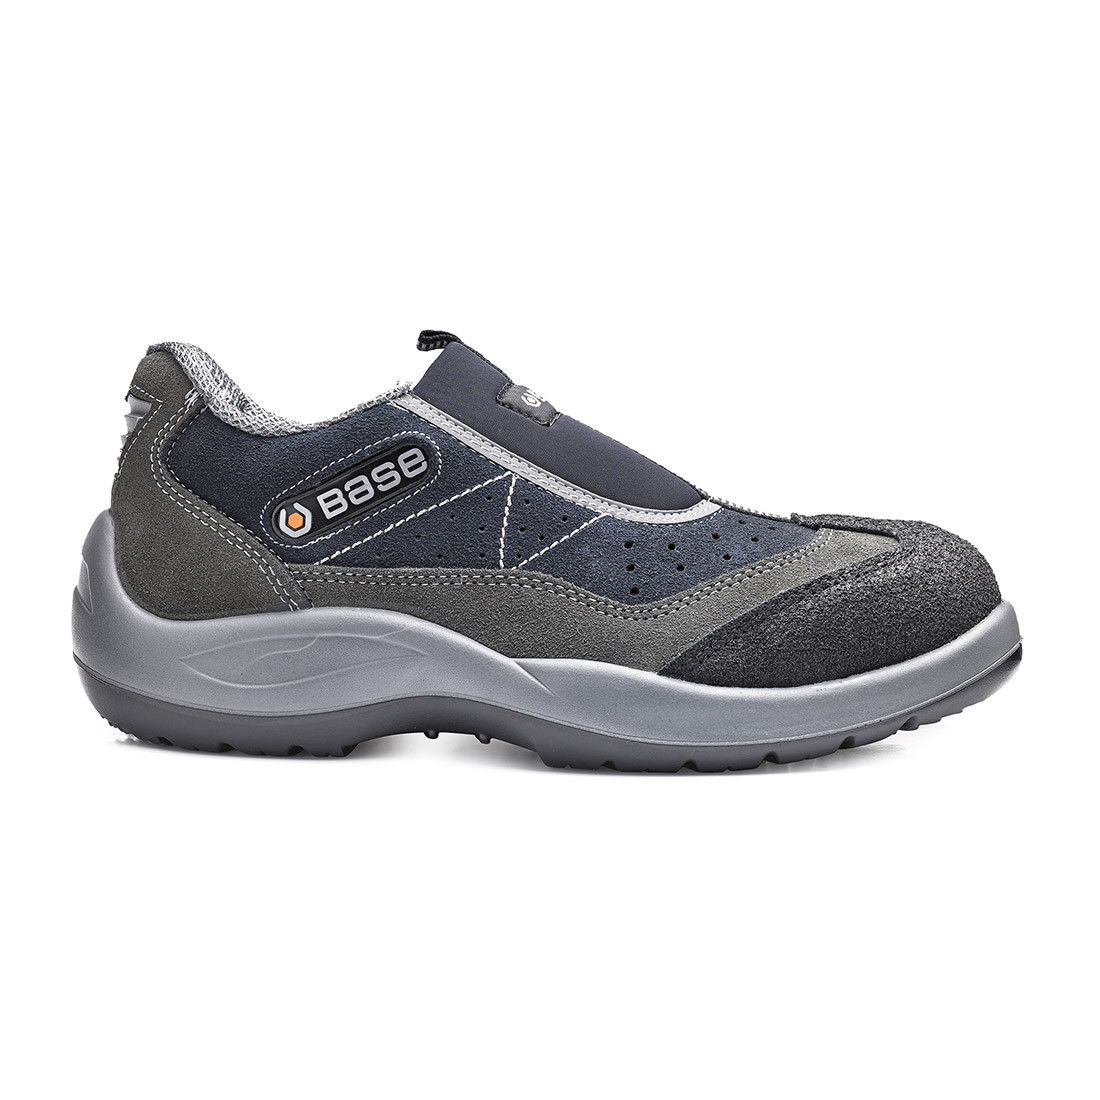 Pantofi Mechanic S1 SRC - Incaltaminte de protectie | Bocanci, Pantofi, Sandale, Cizme